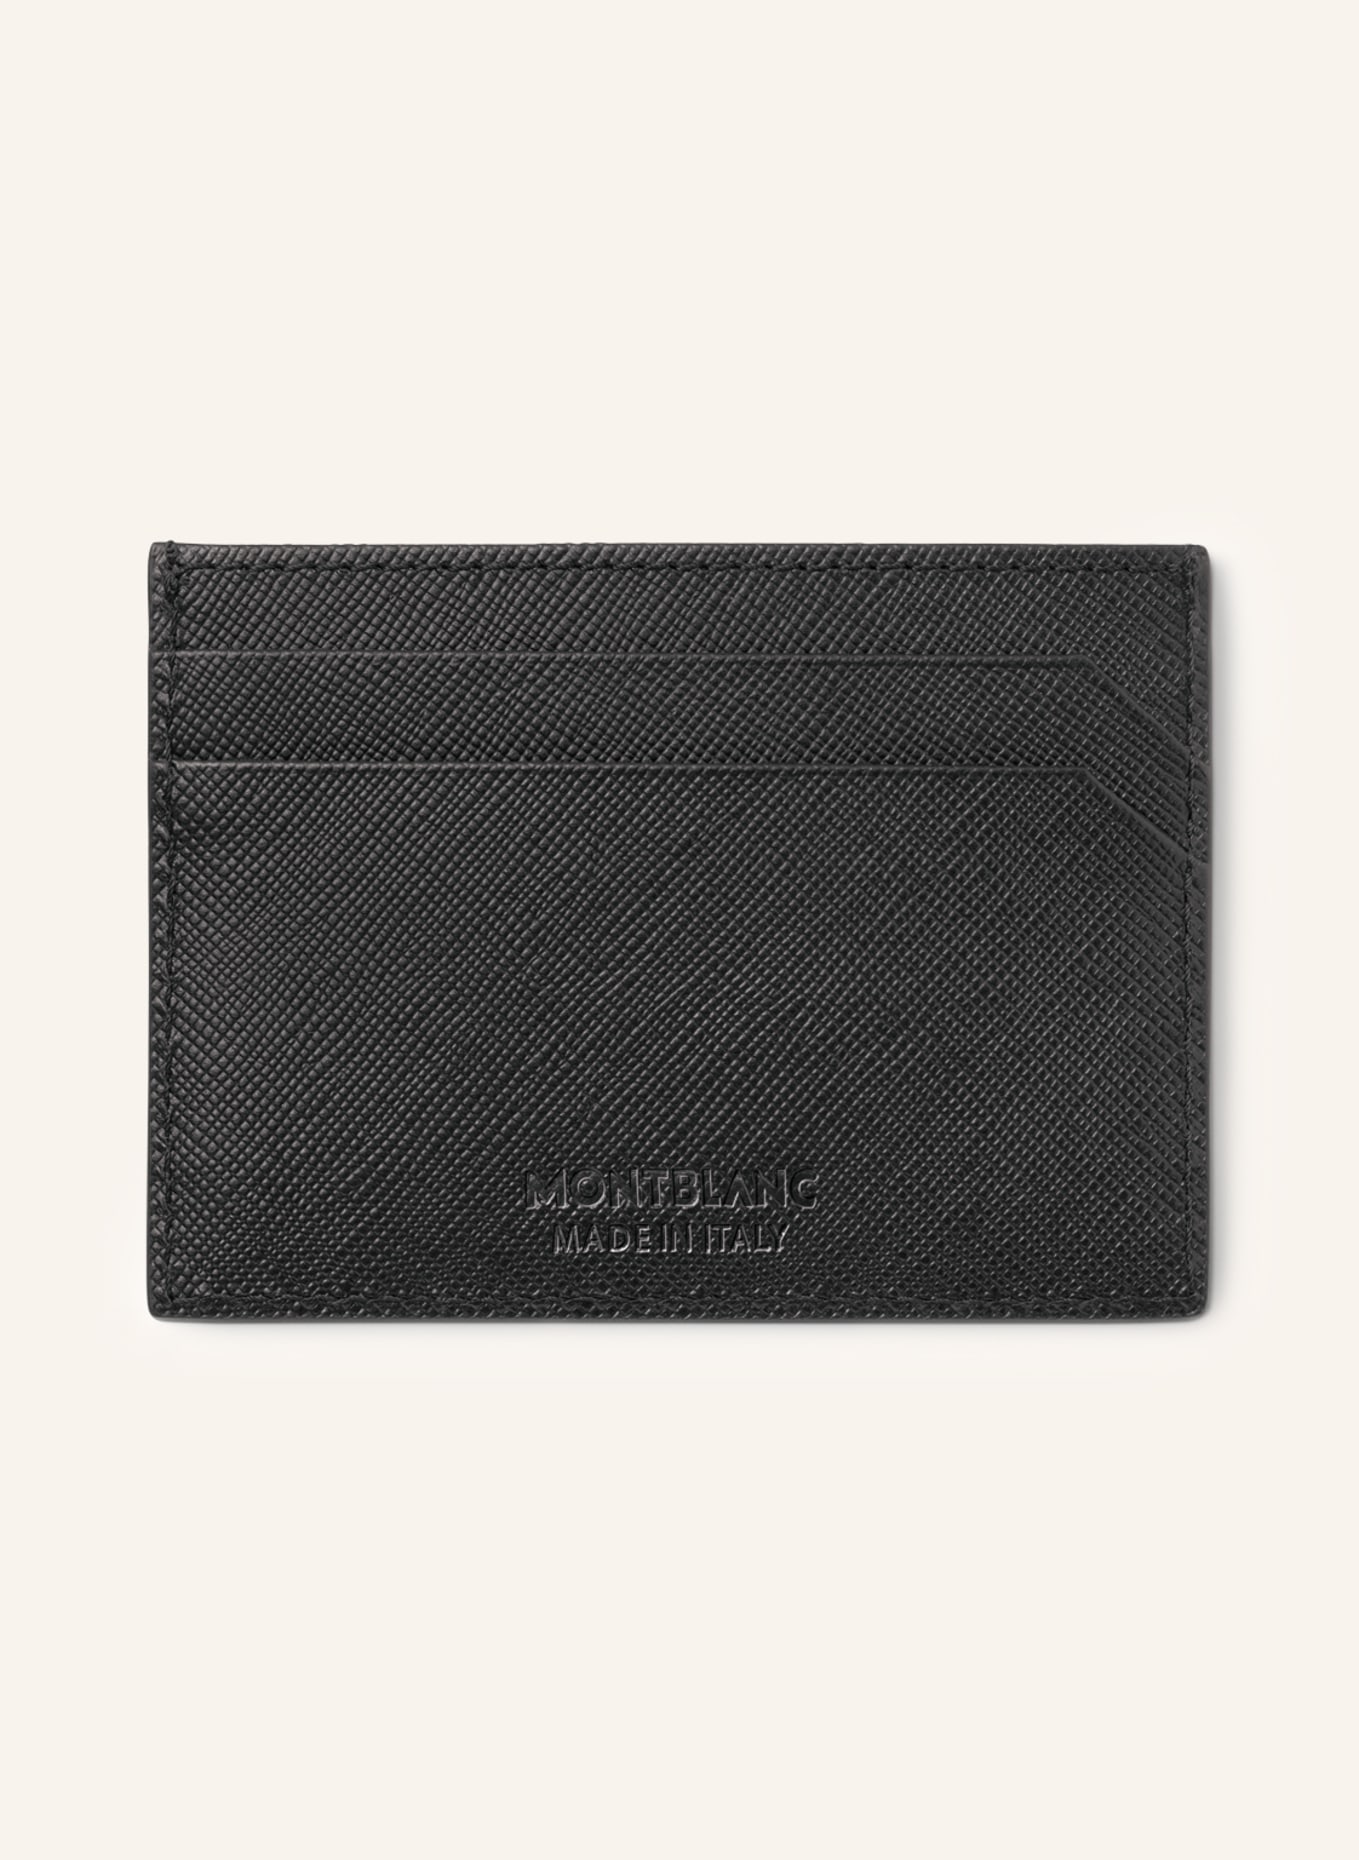 MONTBLANC Saffiano card case SARTORIAL, Color: BLACK (Image 2)